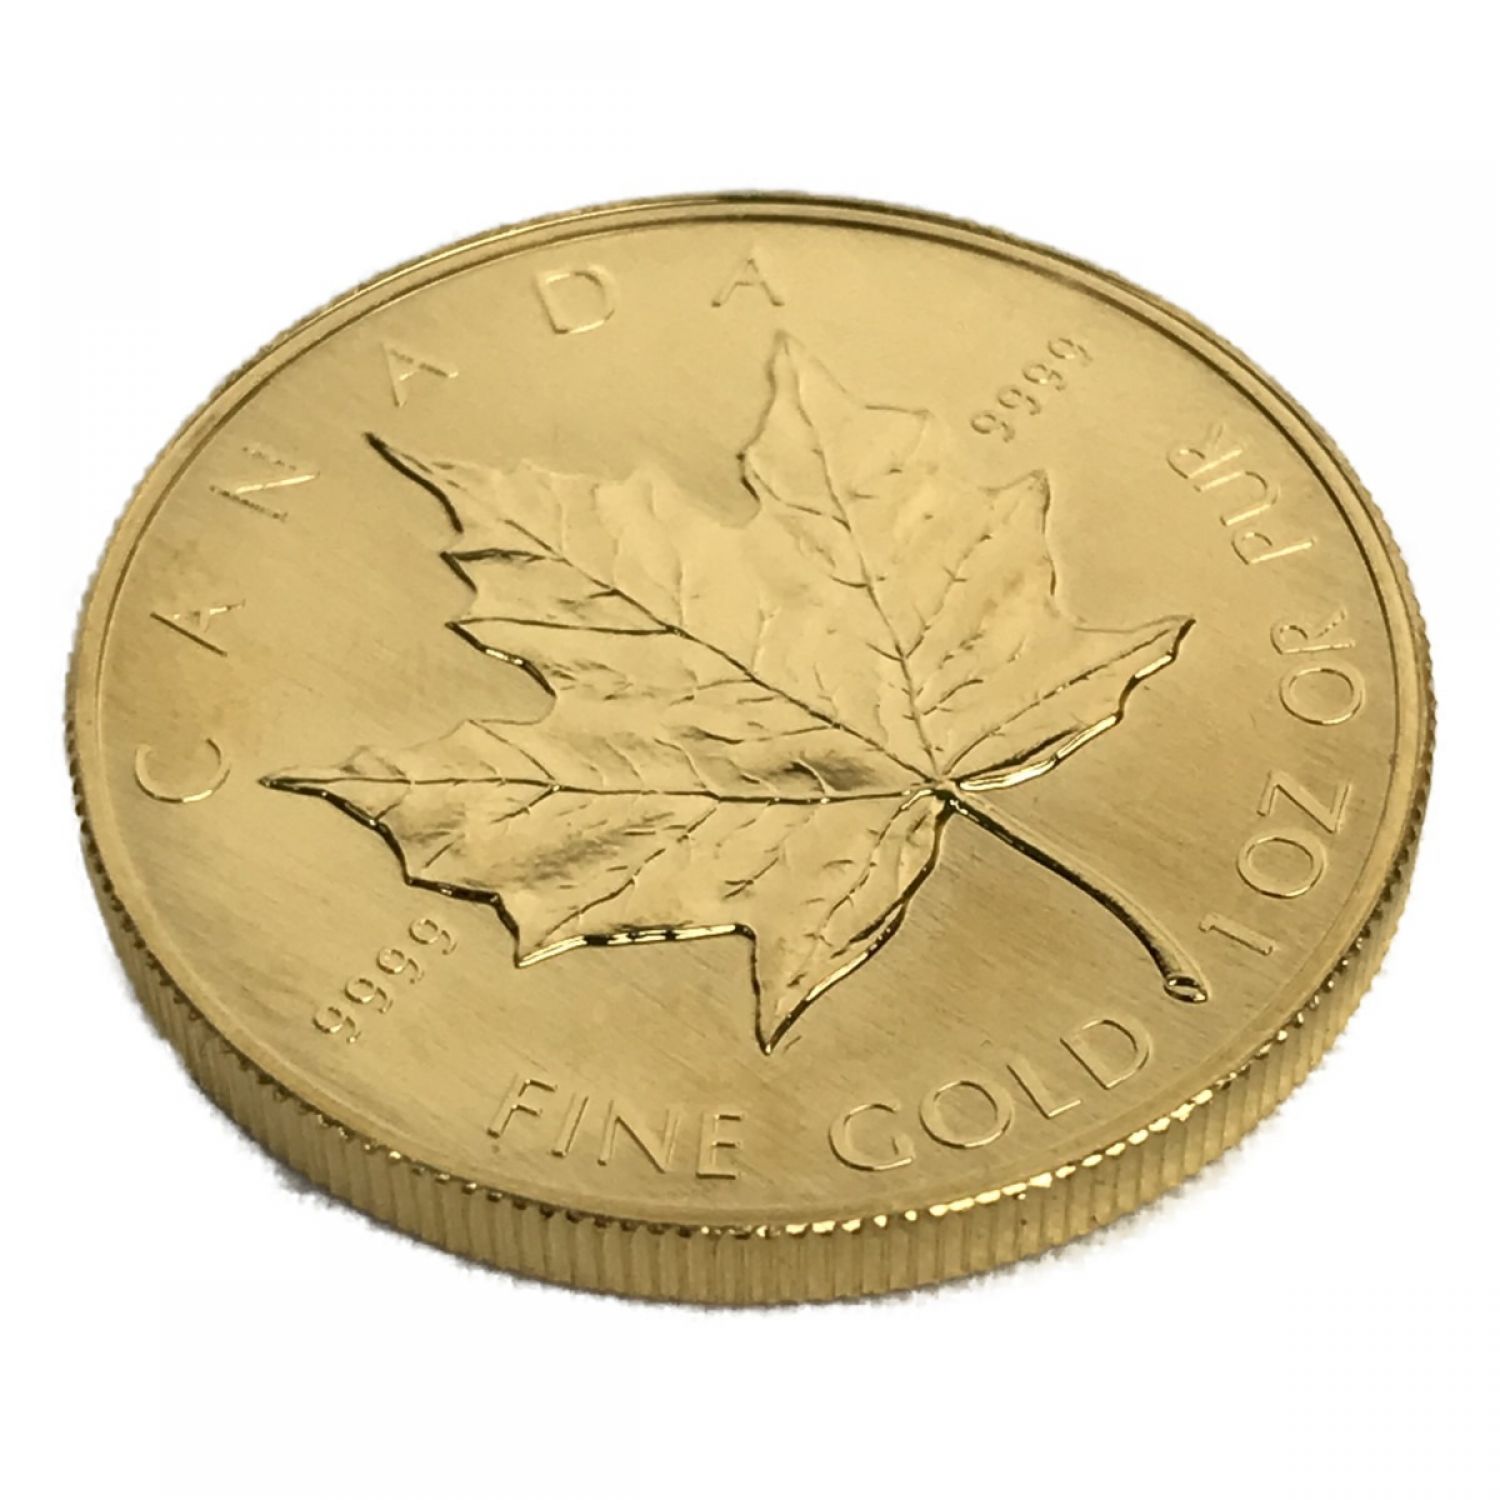 よろしくお願い致しますK24 1/10oz カナダ メイプルリーフ金貨 1996年